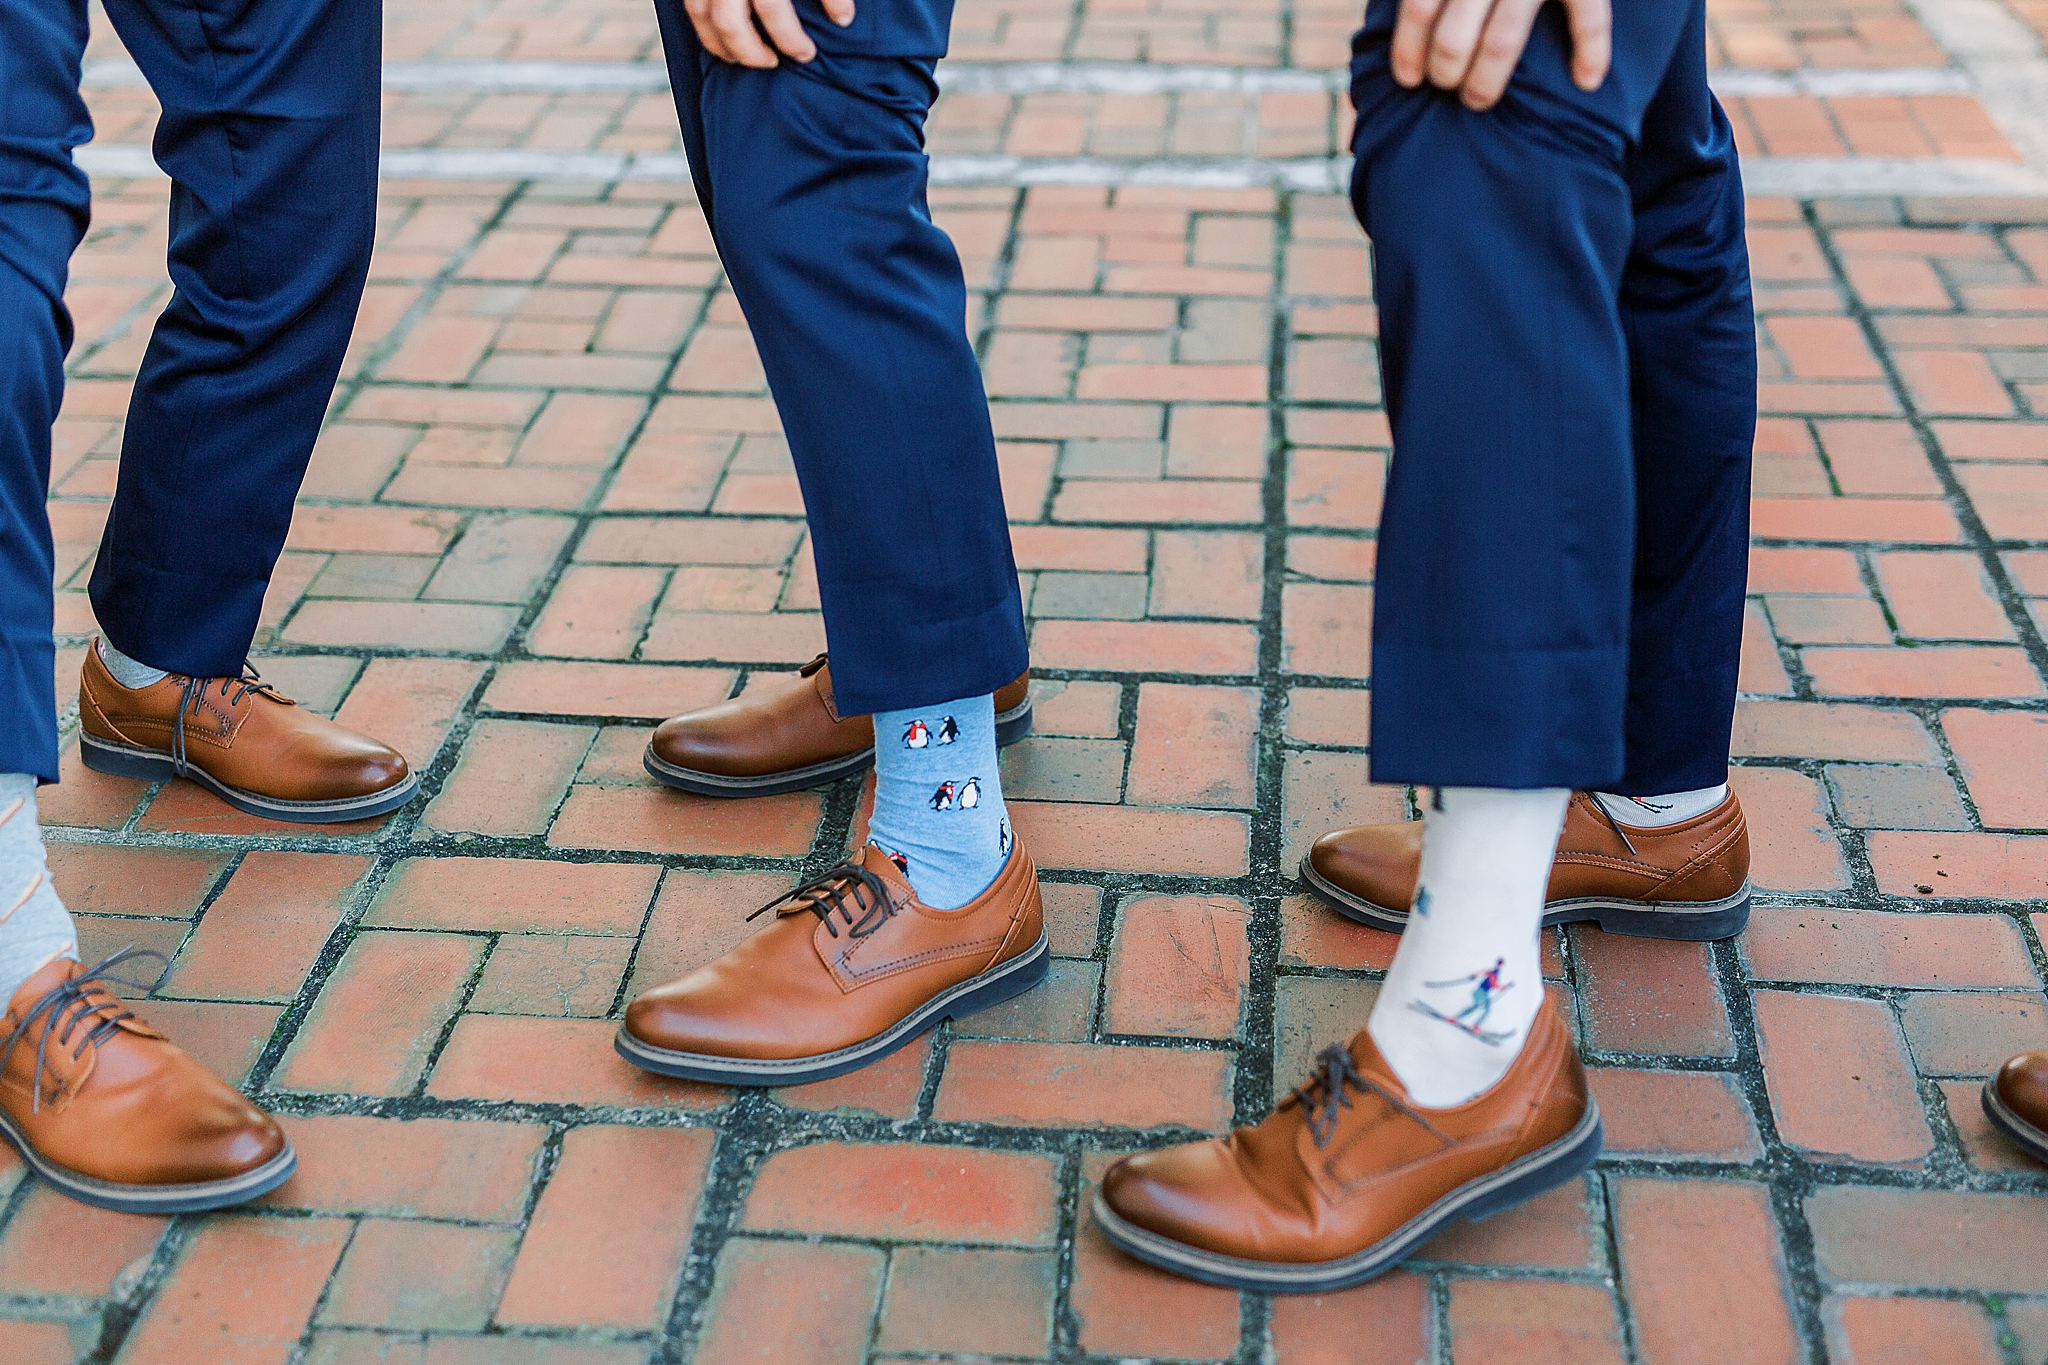 groomsmen custom socks for dinner wedding party